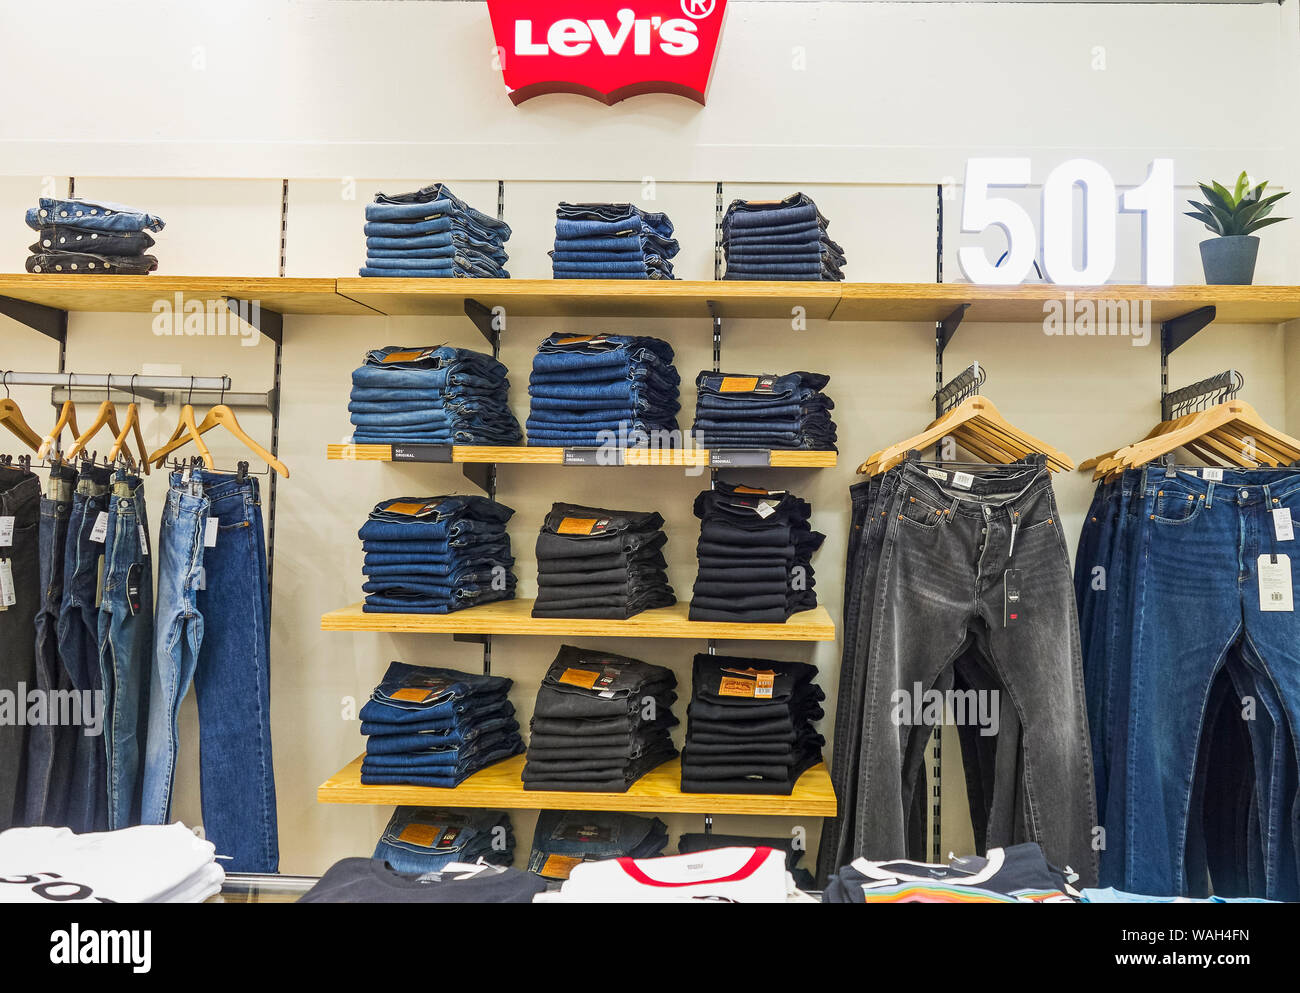 Levi Strauss & Co d'habillement à l'écran dans un magasin Photo Stock -  Alamy